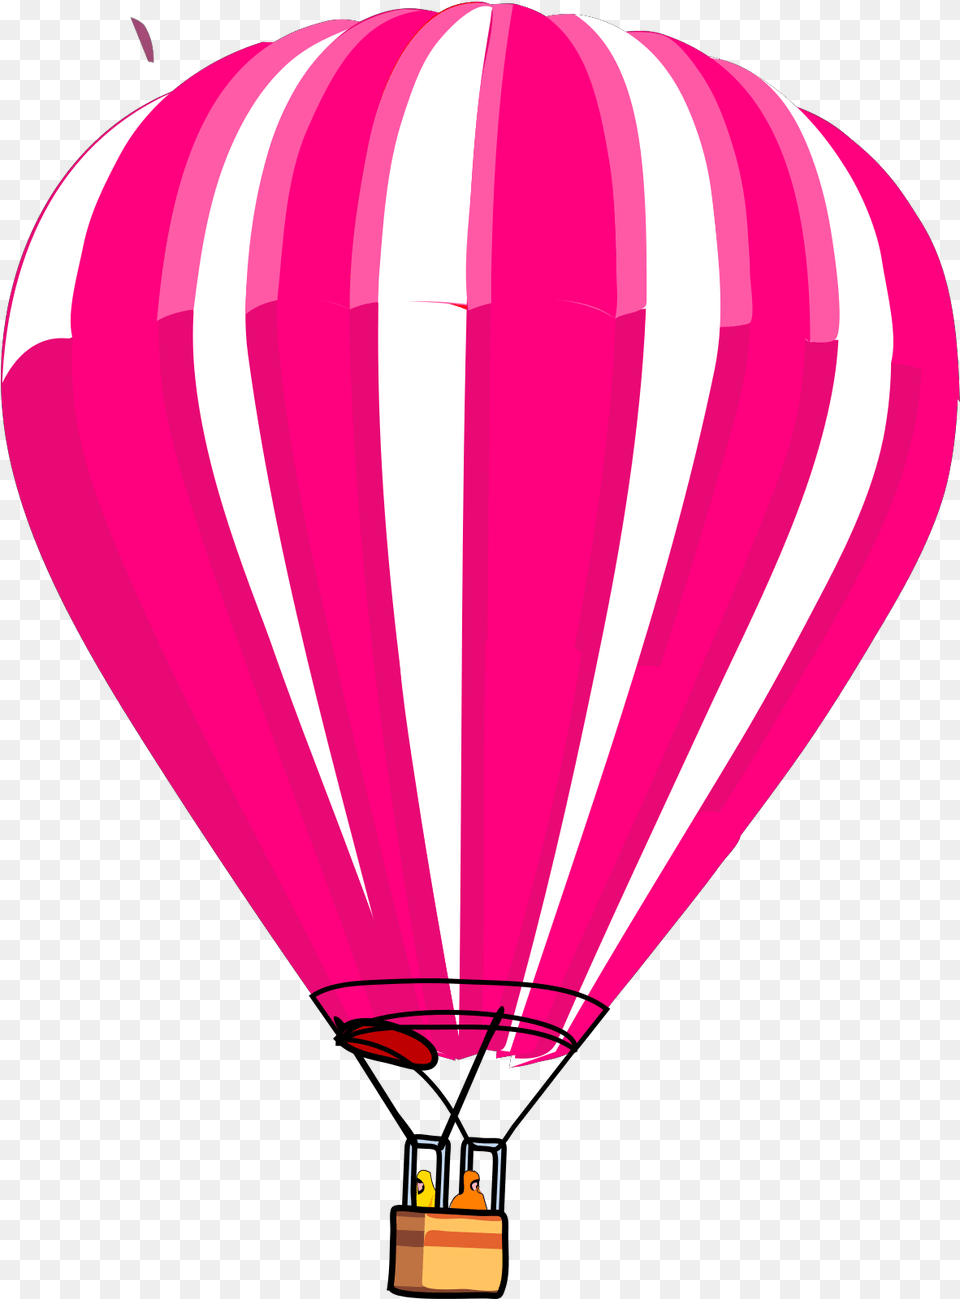 Hot Air Balloon Vector, Aircraft, Hot Air Balloon, Transportation, Vehicle Free Png Download